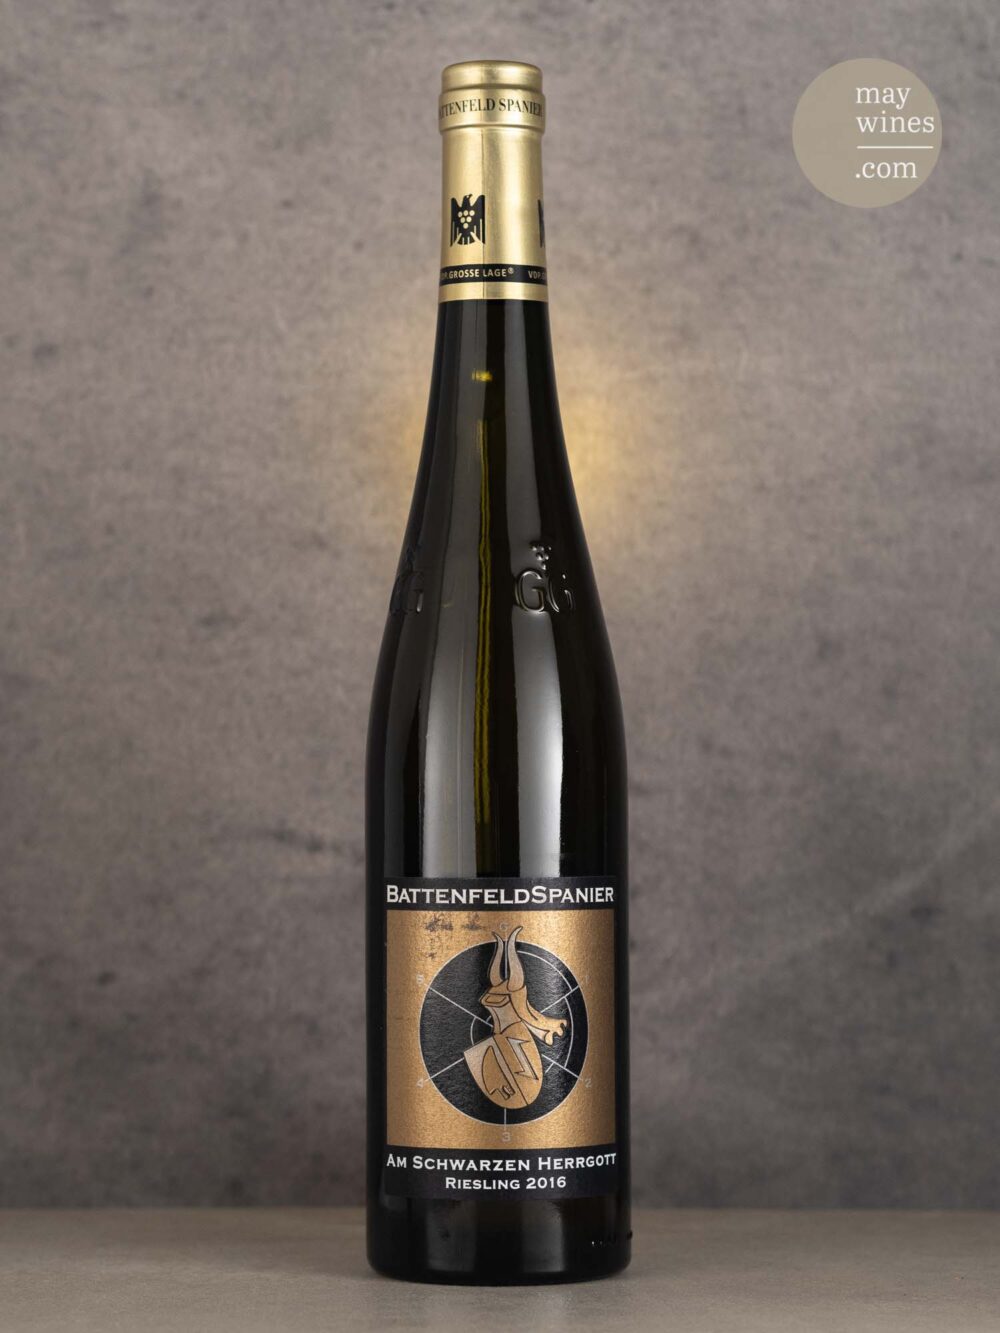 May Wines – Weißwein – 2016 Am Schwarzen Herrgott Riesling GG - Battenfeld-Spanier